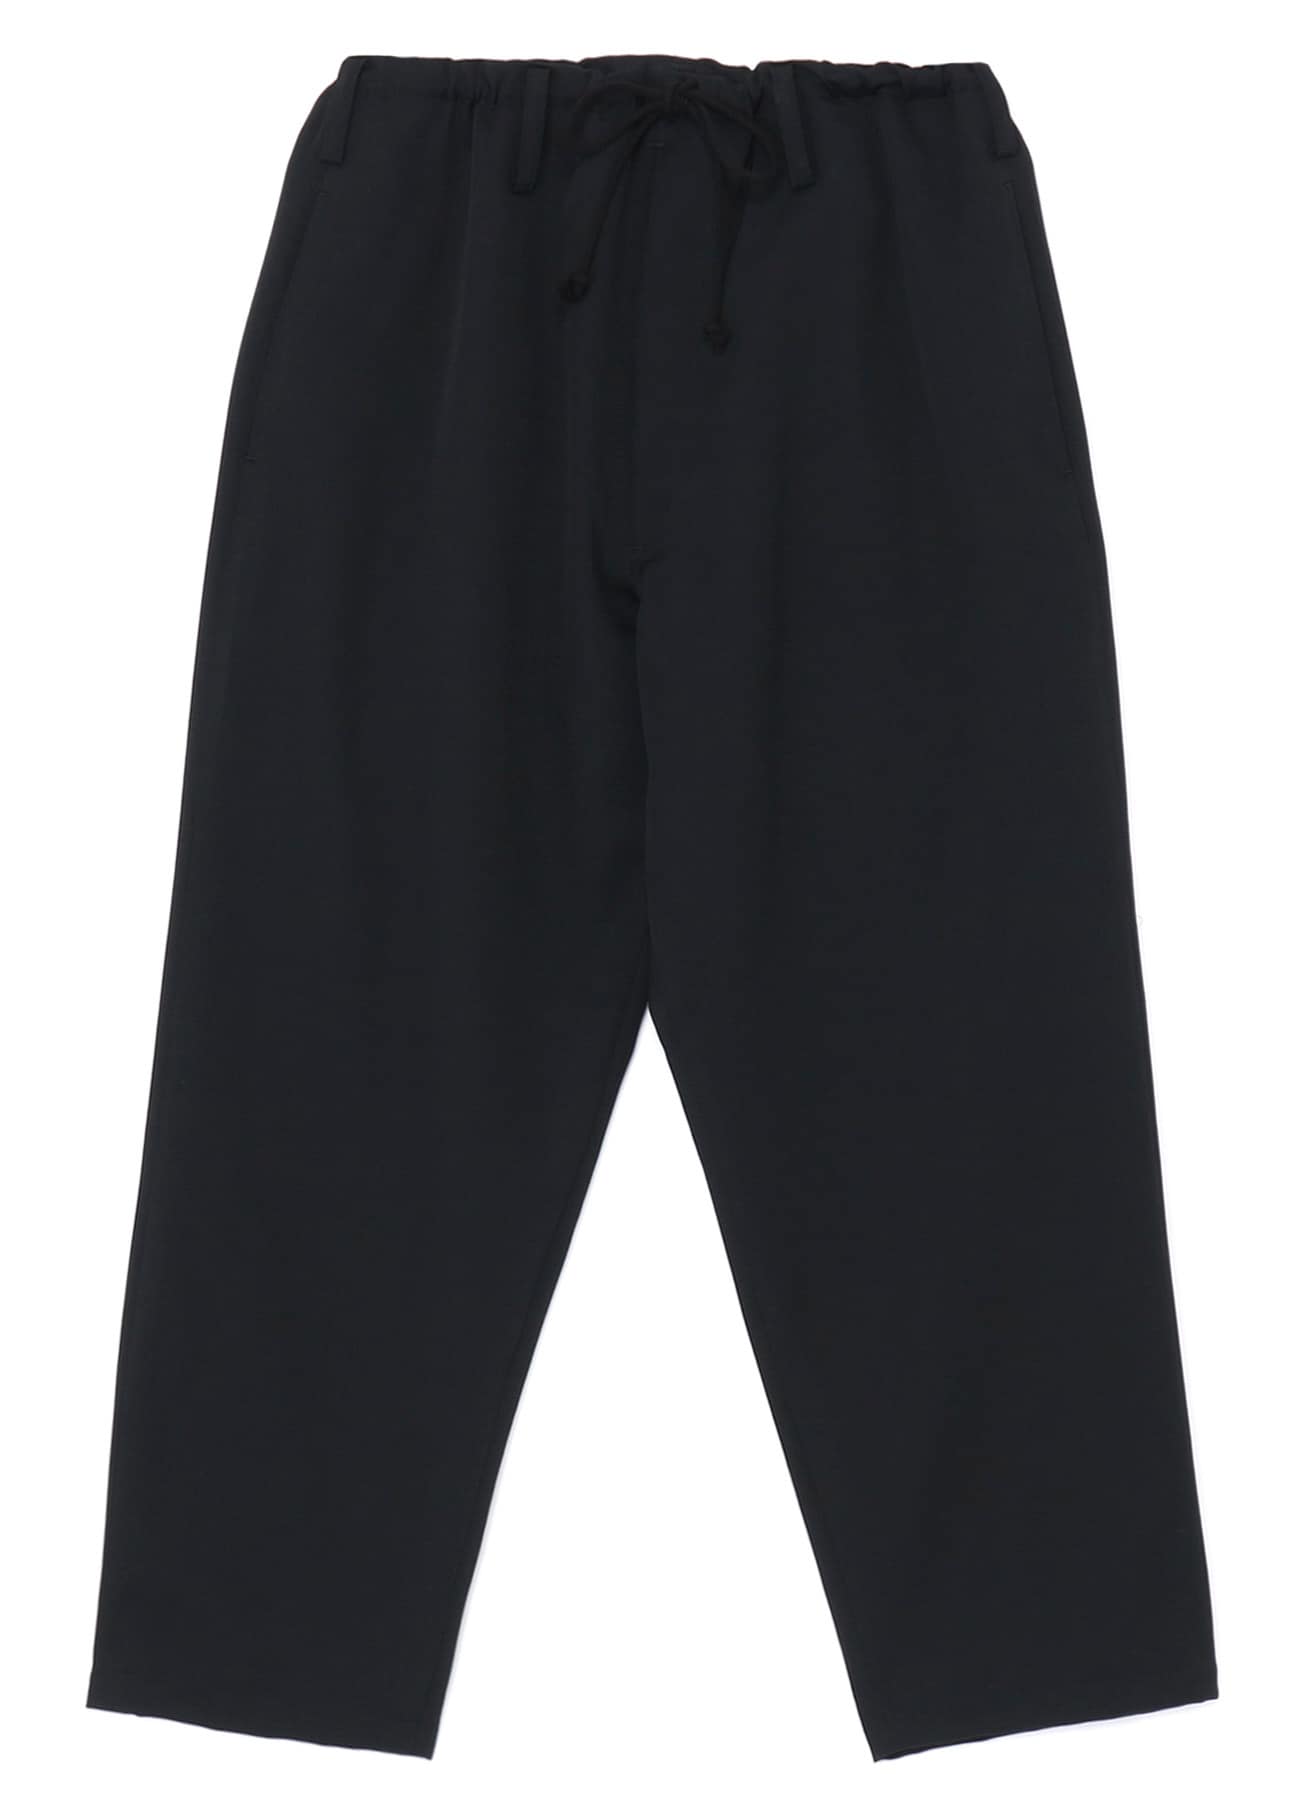 美品 ヨウジヤマモト Yohji Yamamoto パンツ ロングパンツ スラックスパンツ ストライプ ウール ボトムス レディース FQ-P01-204 2(M相当) ブラック約70cmヒップ